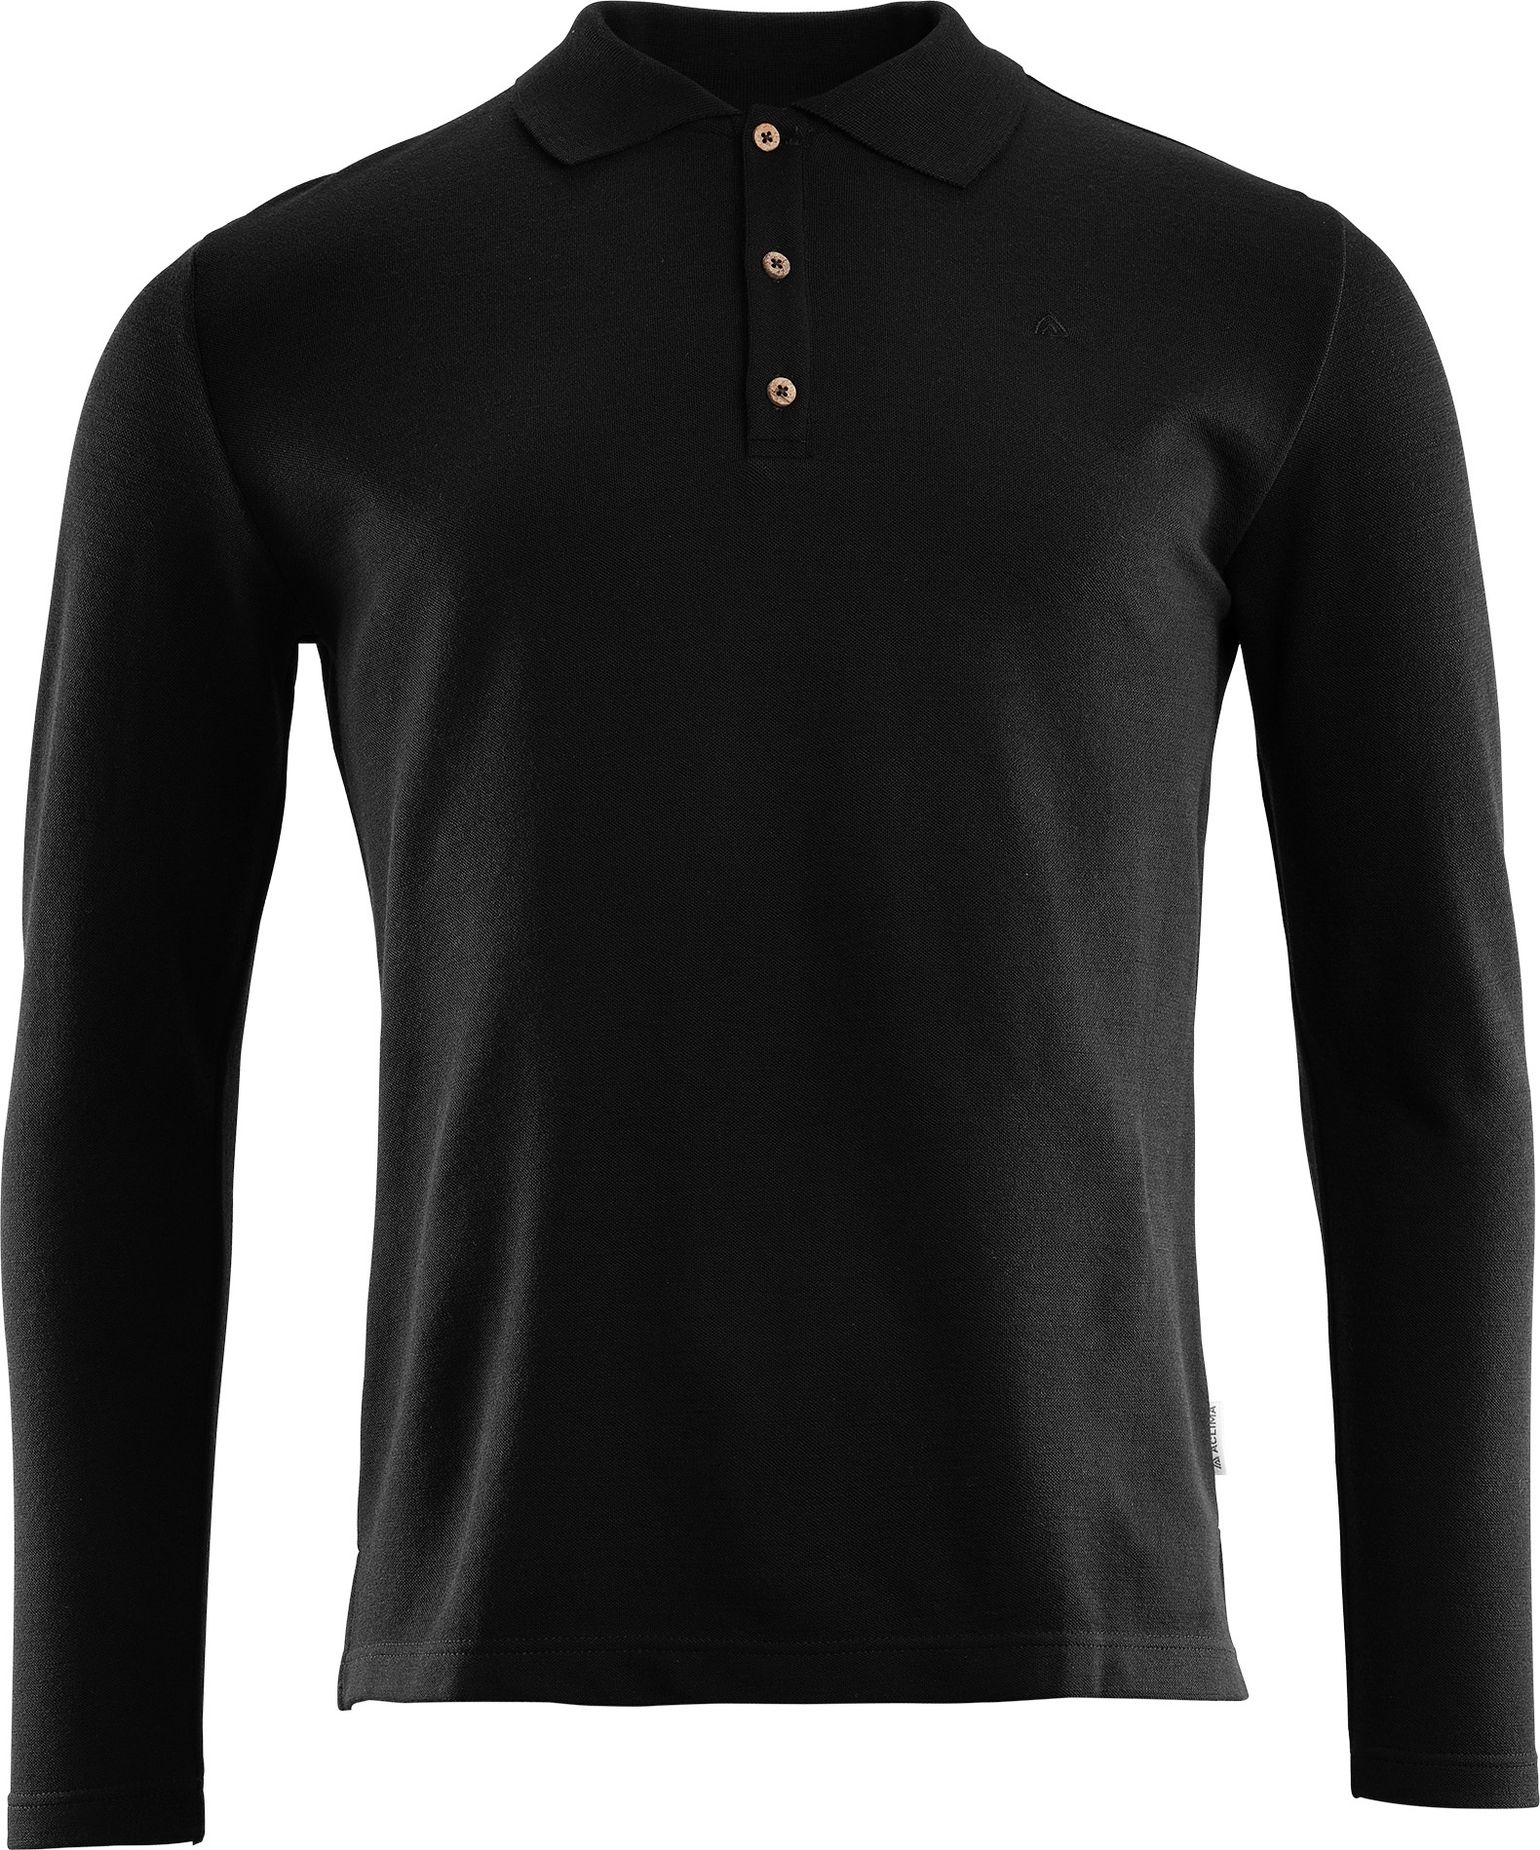 Men's LeisureWool Pique Shirt Long Sleeve Jet Black